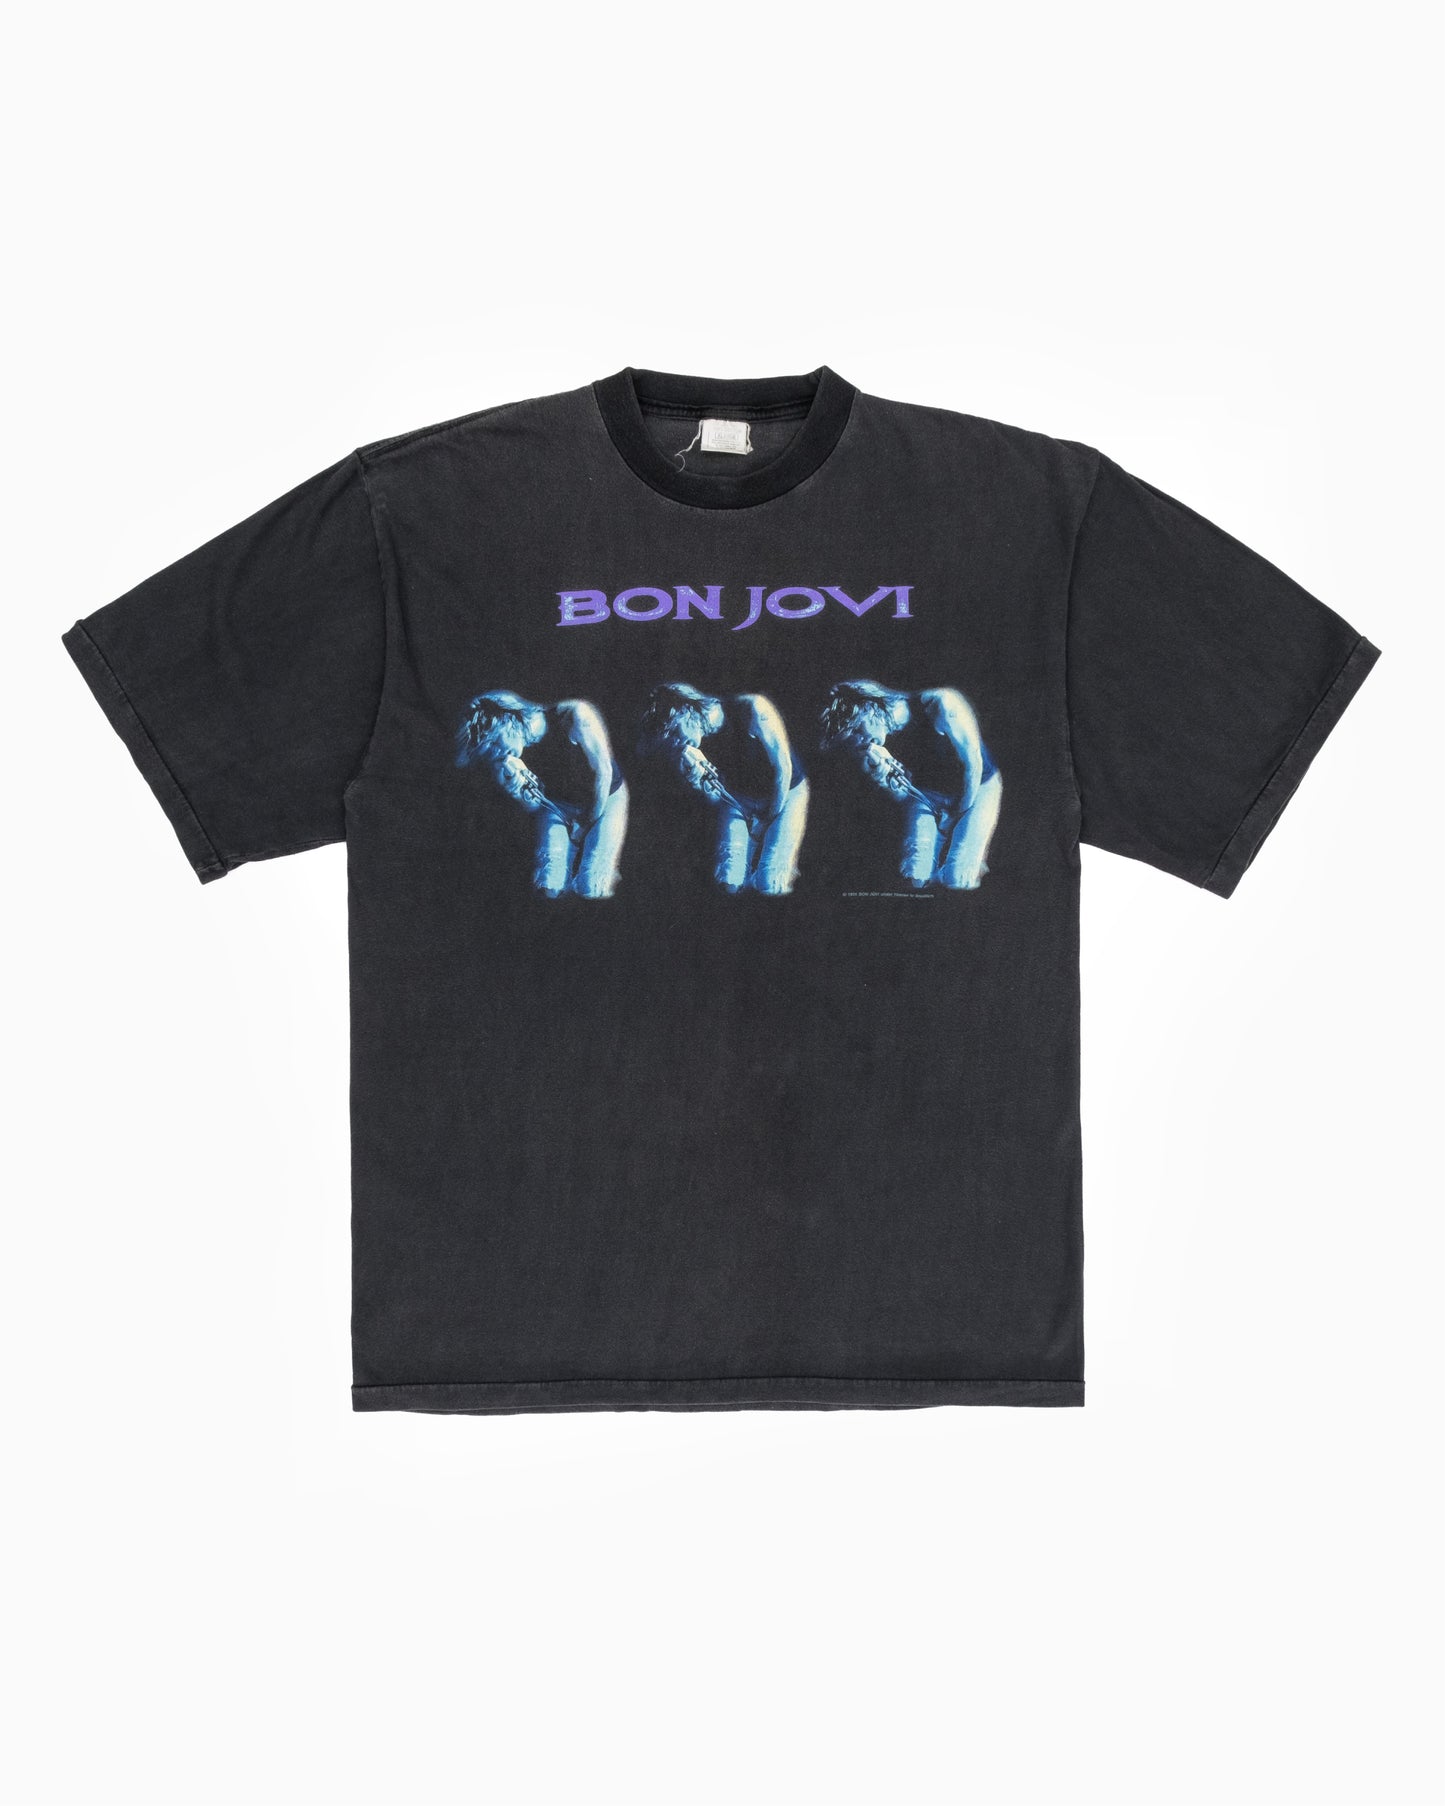 1995 Bon Jovi Tour T-Shirt